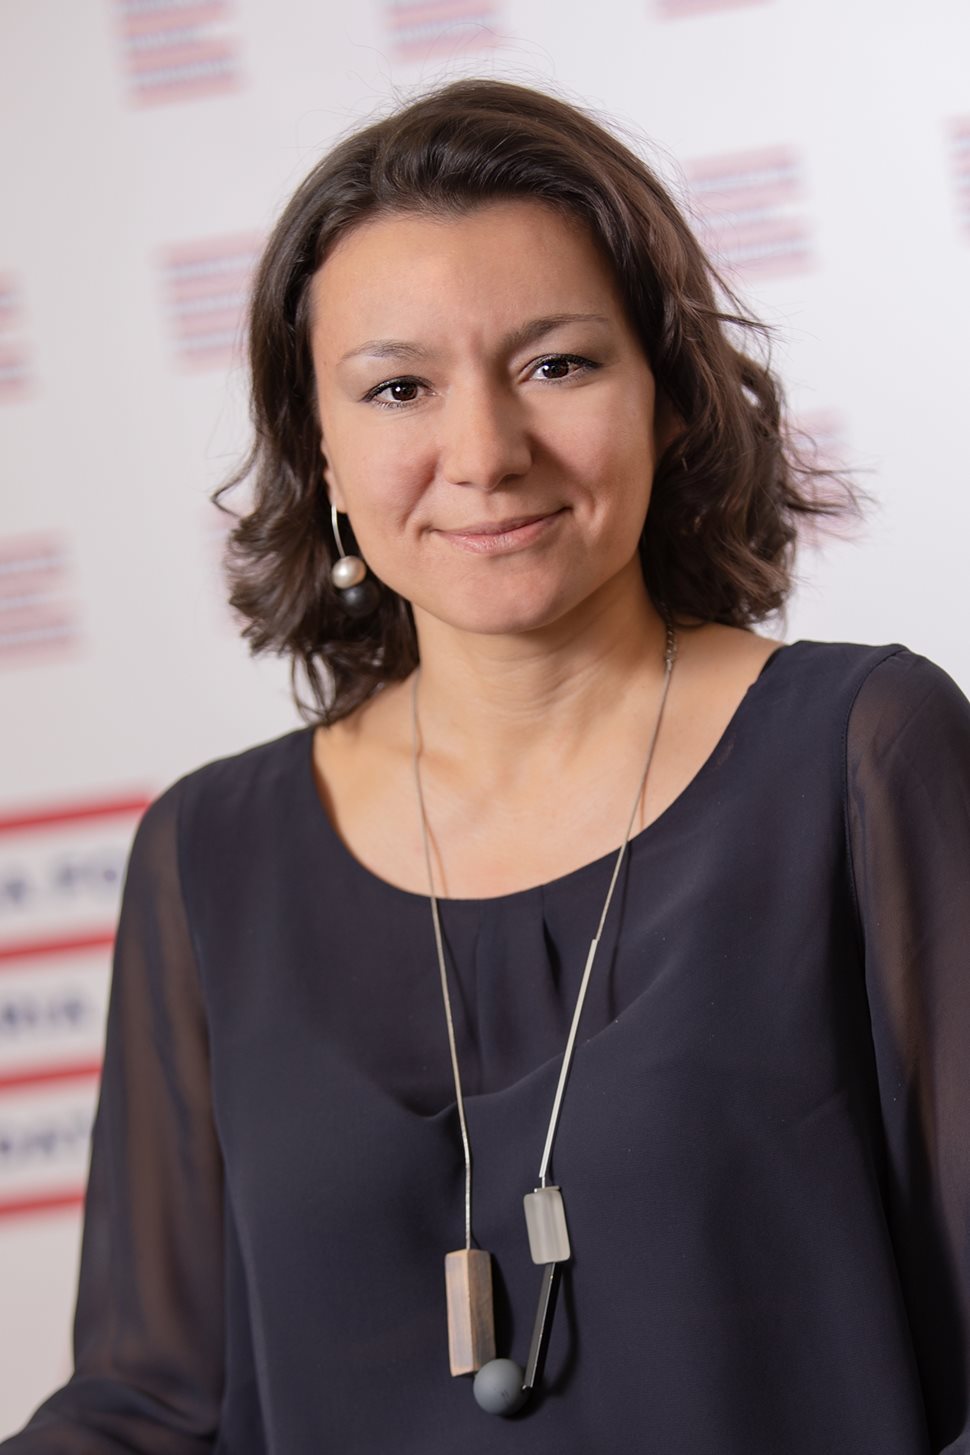 
Виолета Недева има бакалвърска степен по инженерна екология от Химико технологичен и металургичен университет в София (ХТМУ) и магистърска степен по опазване на околната среда и устойчиво развитие от ХТМУ. Част от фондацията е от 2011 г.